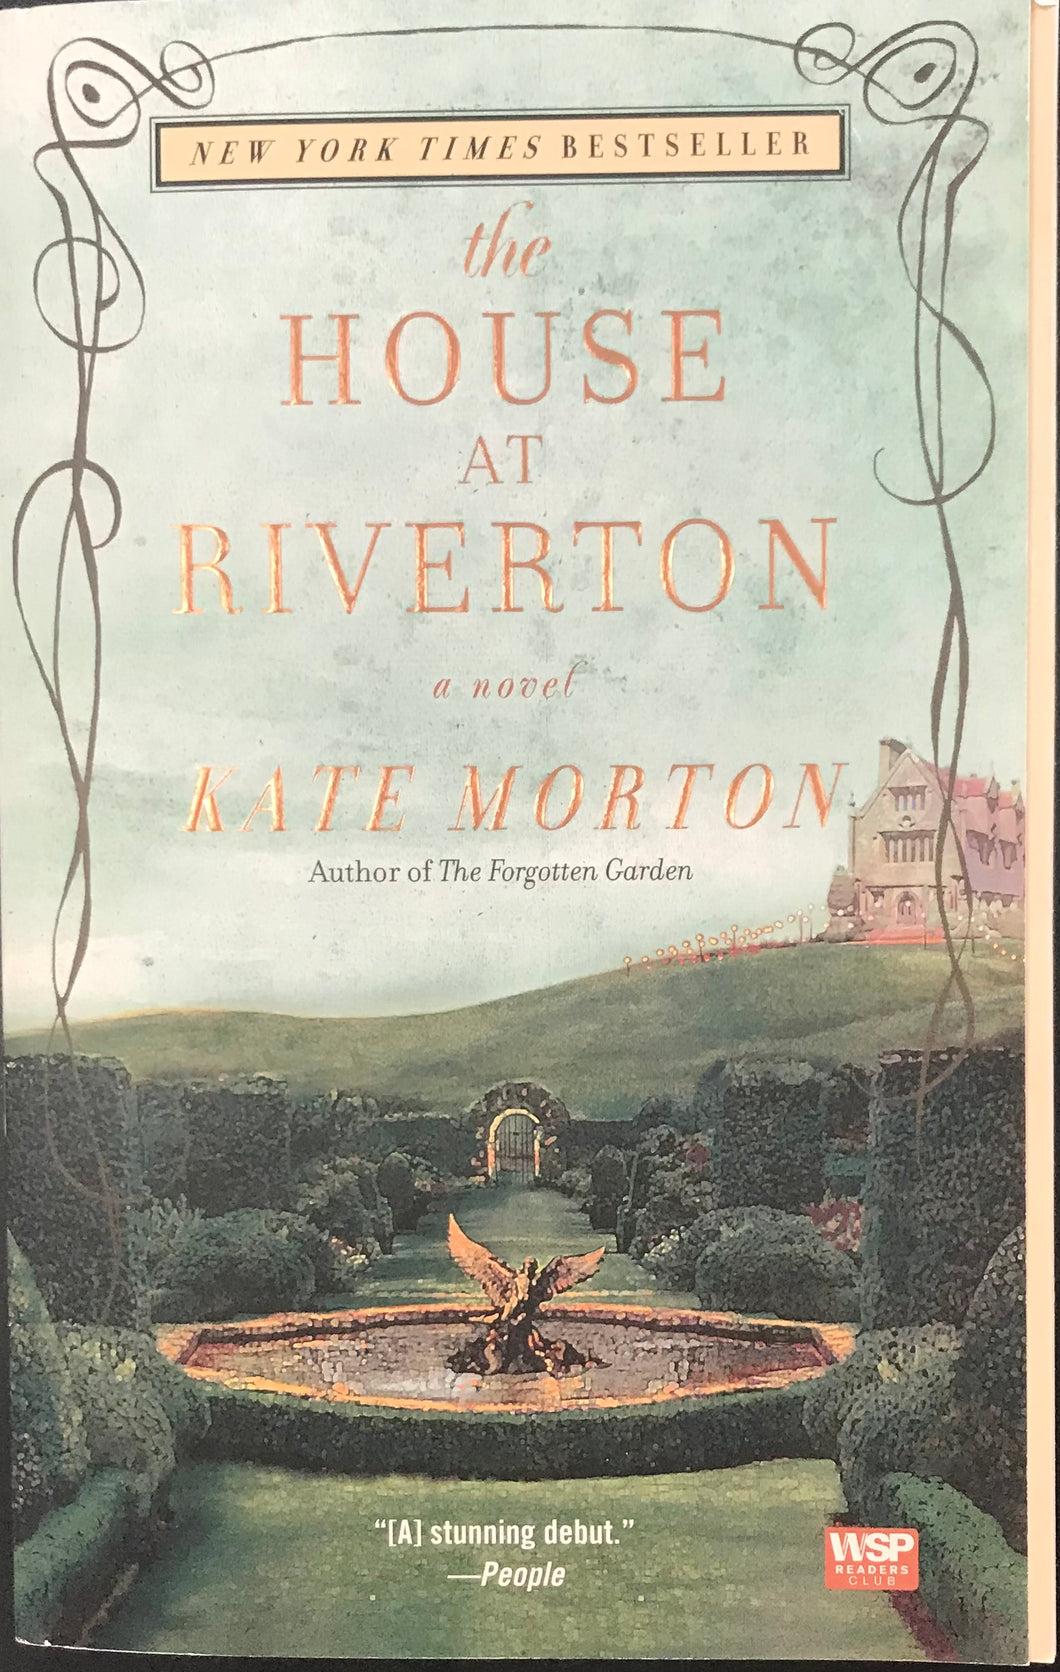 The House at Riverton, Kate Morton